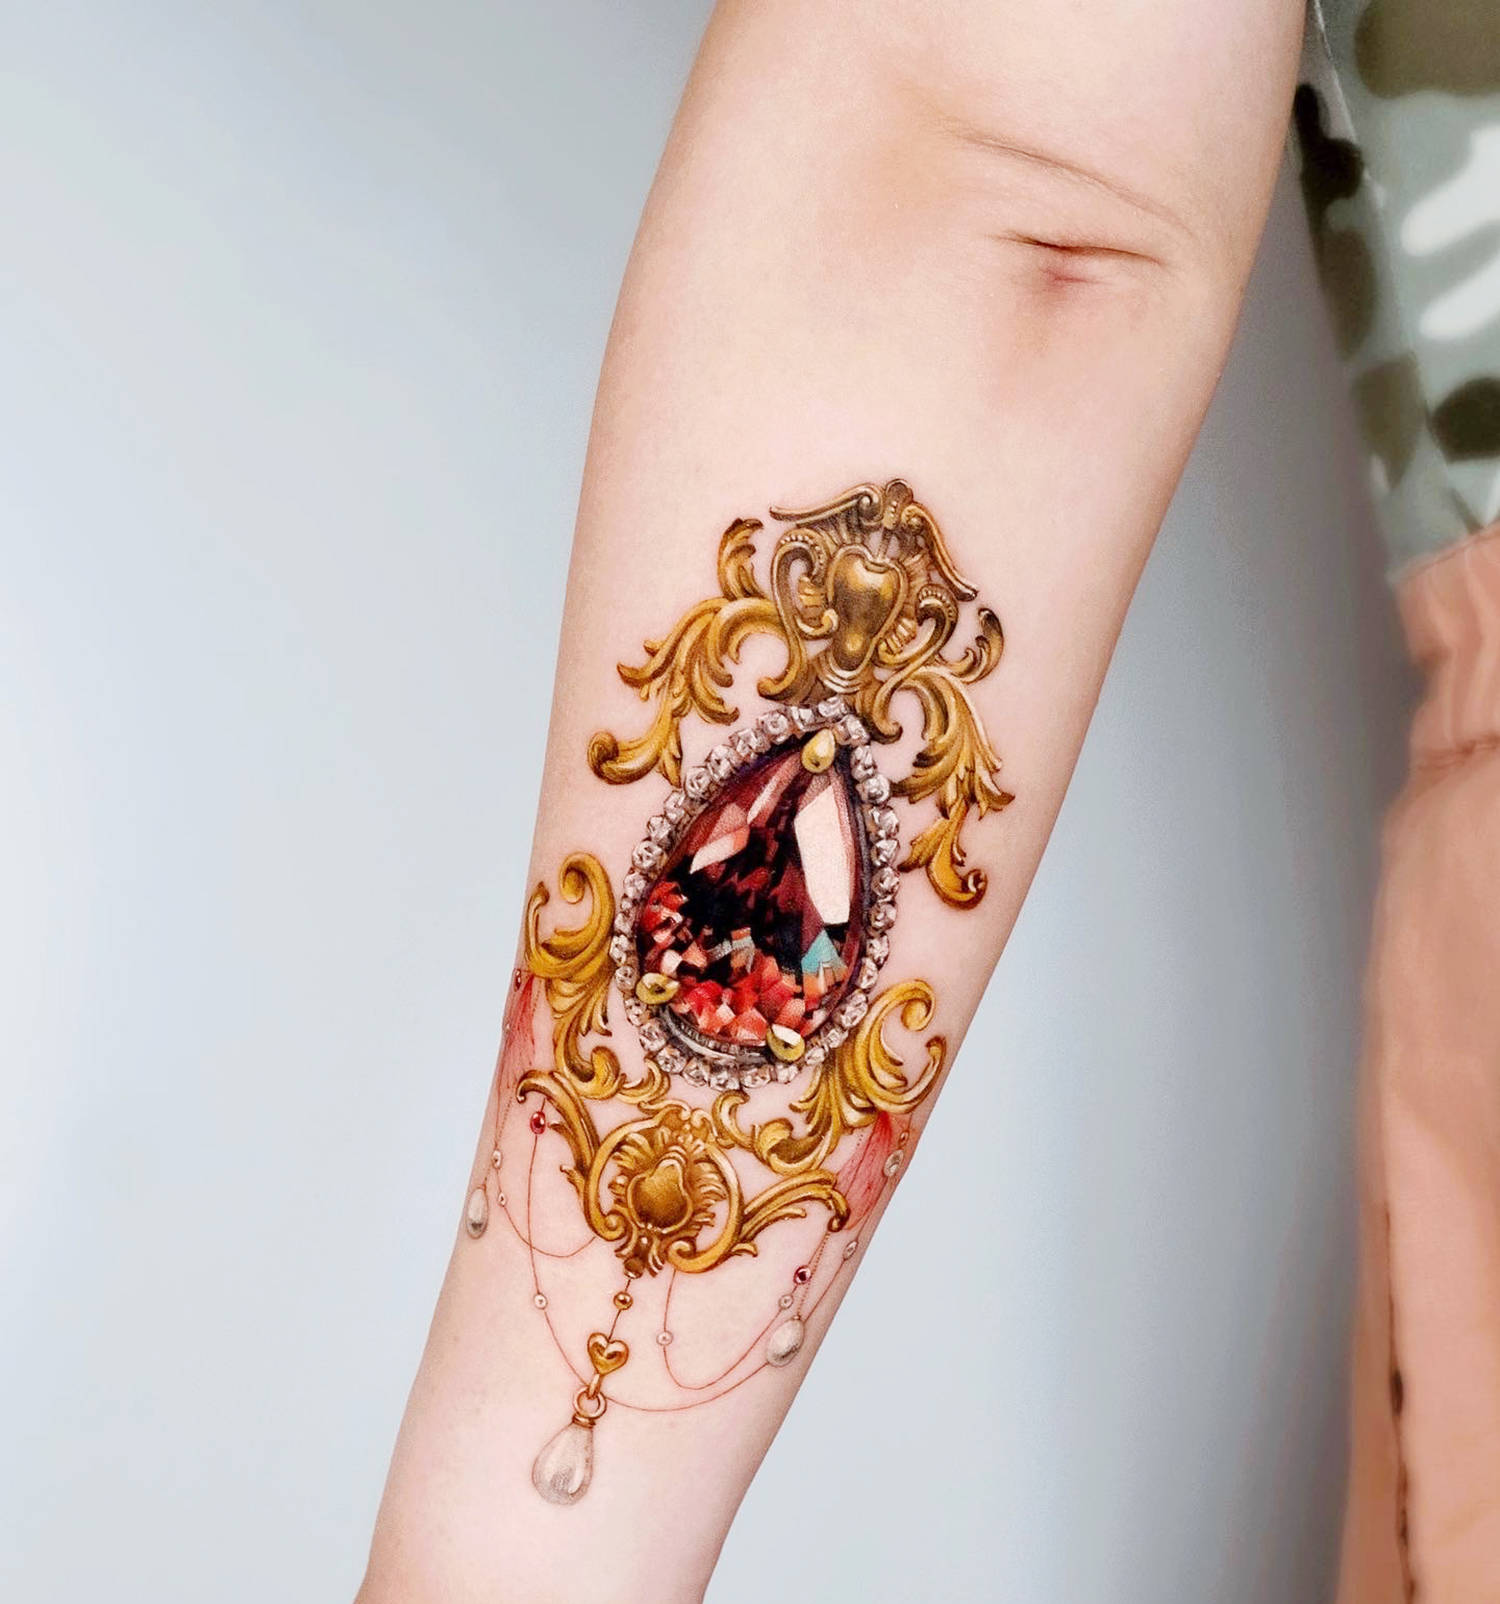 jewlery tattoo on arm by chou